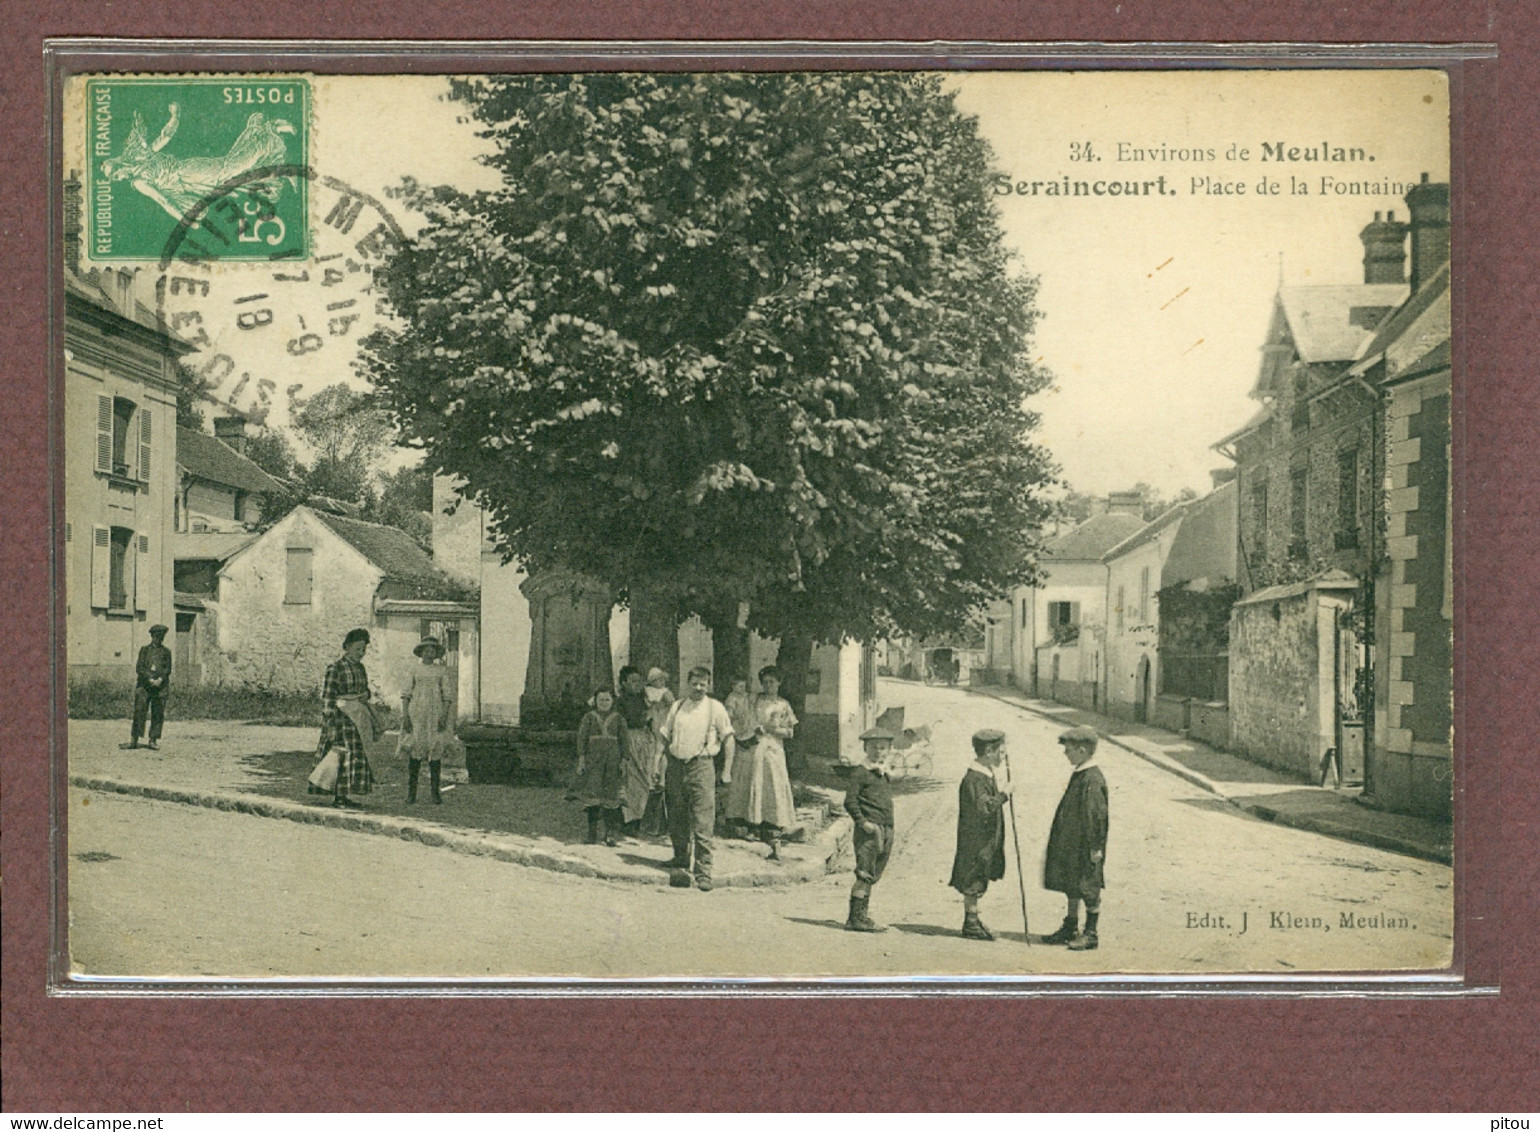 SERAINCOURT (95) - ENVIRONS DE MEULAN - PLACE DE LA FONTAINE - Seraincourt